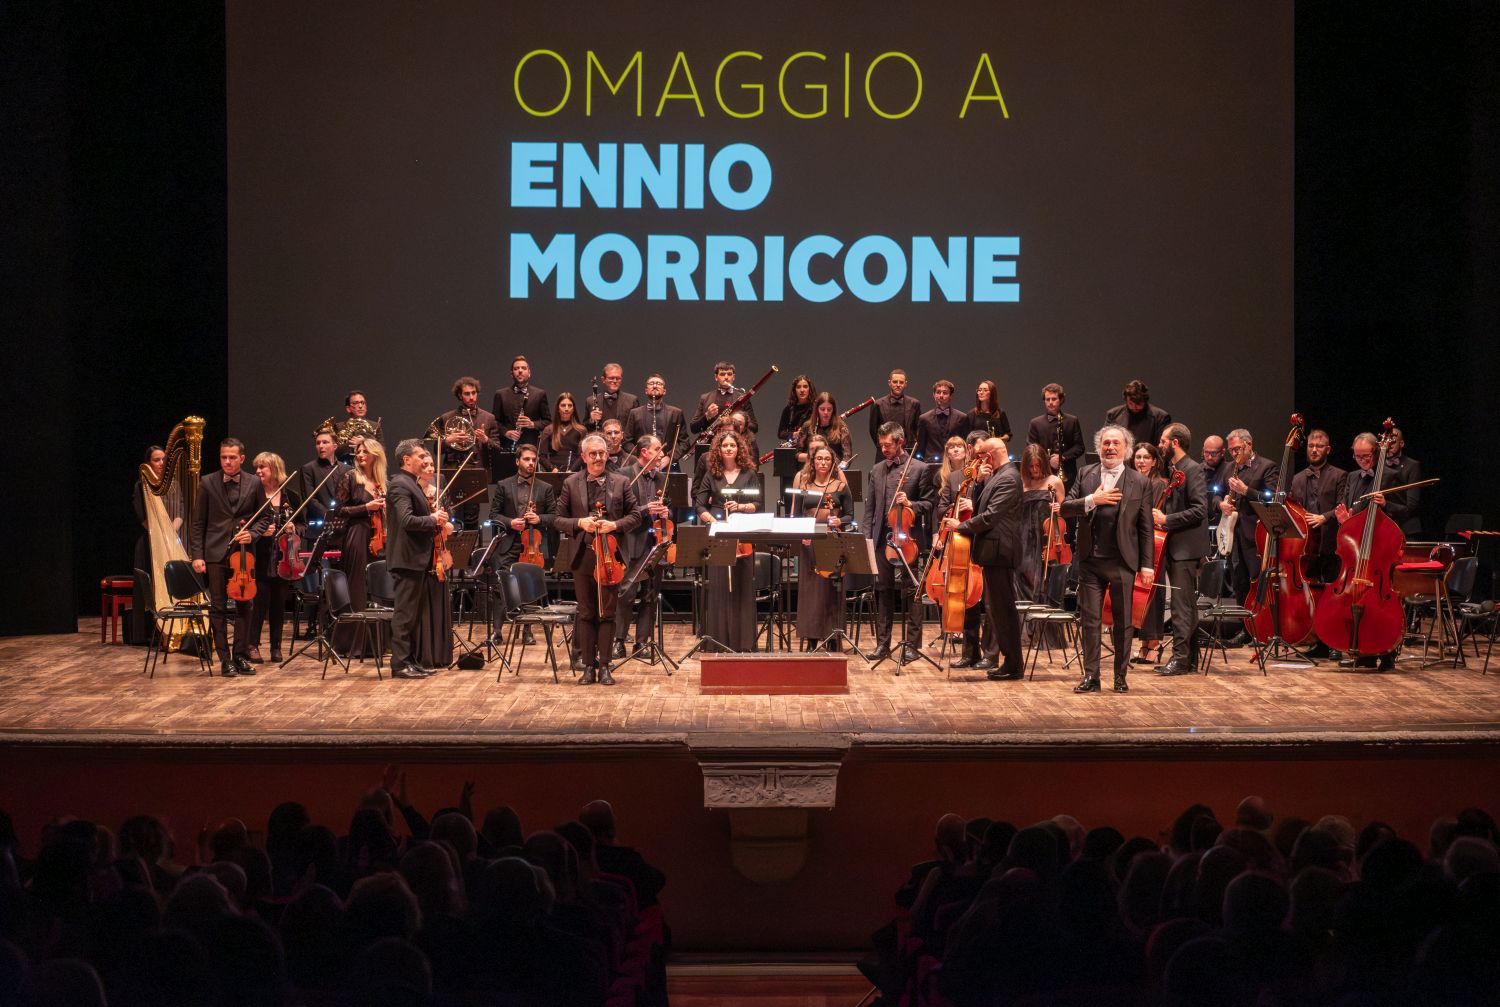 Diego Basso Omaggio a Morricone Teatro Verdi 3 b